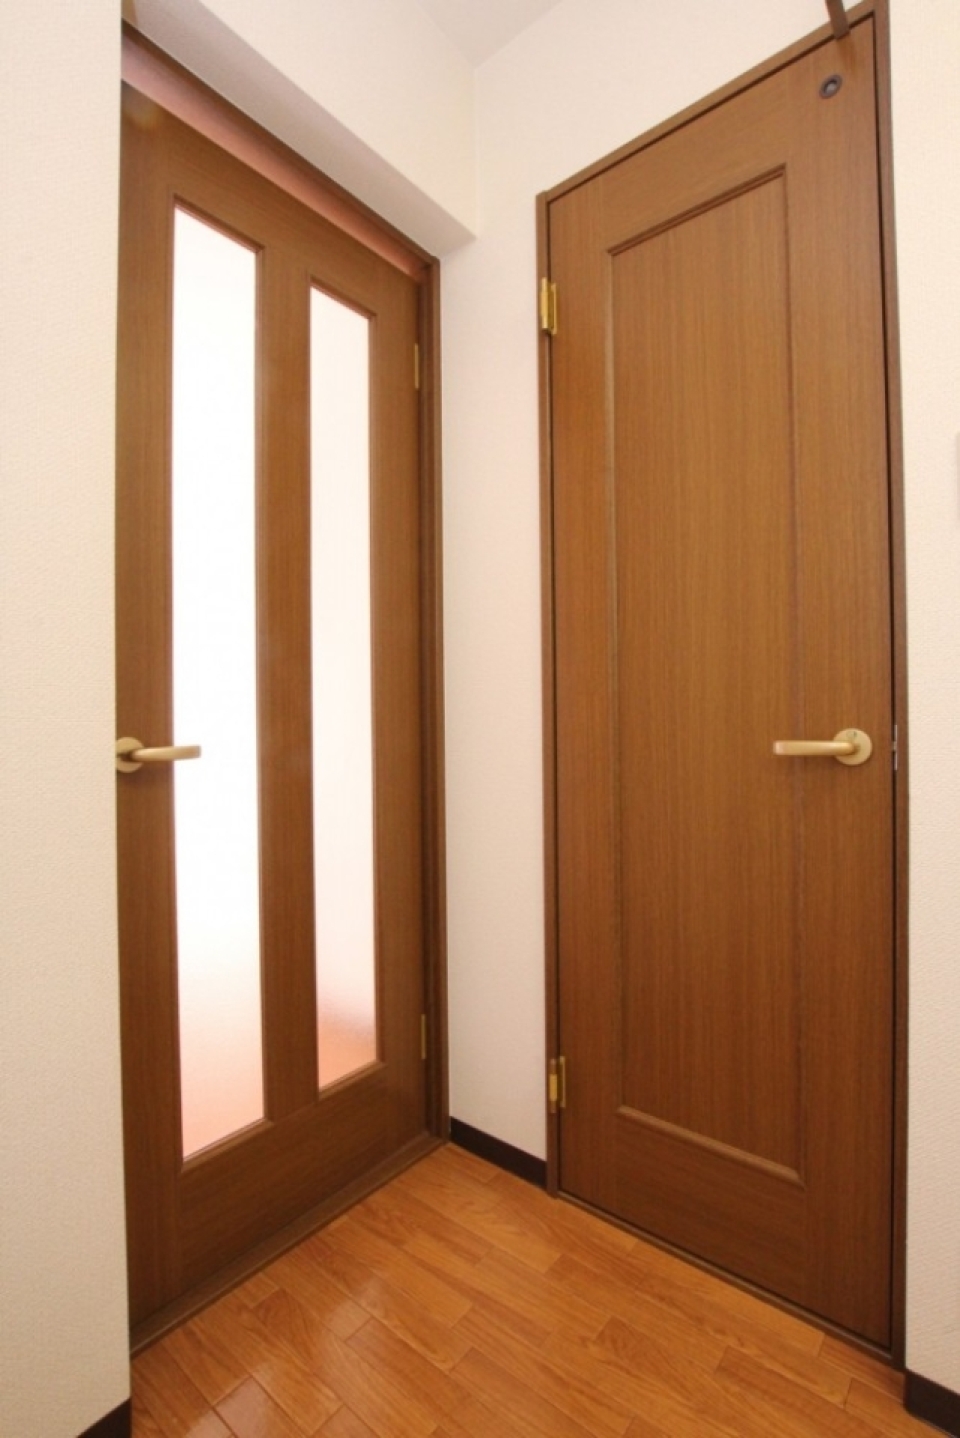 右がトイレの扉、左がお部屋への扉